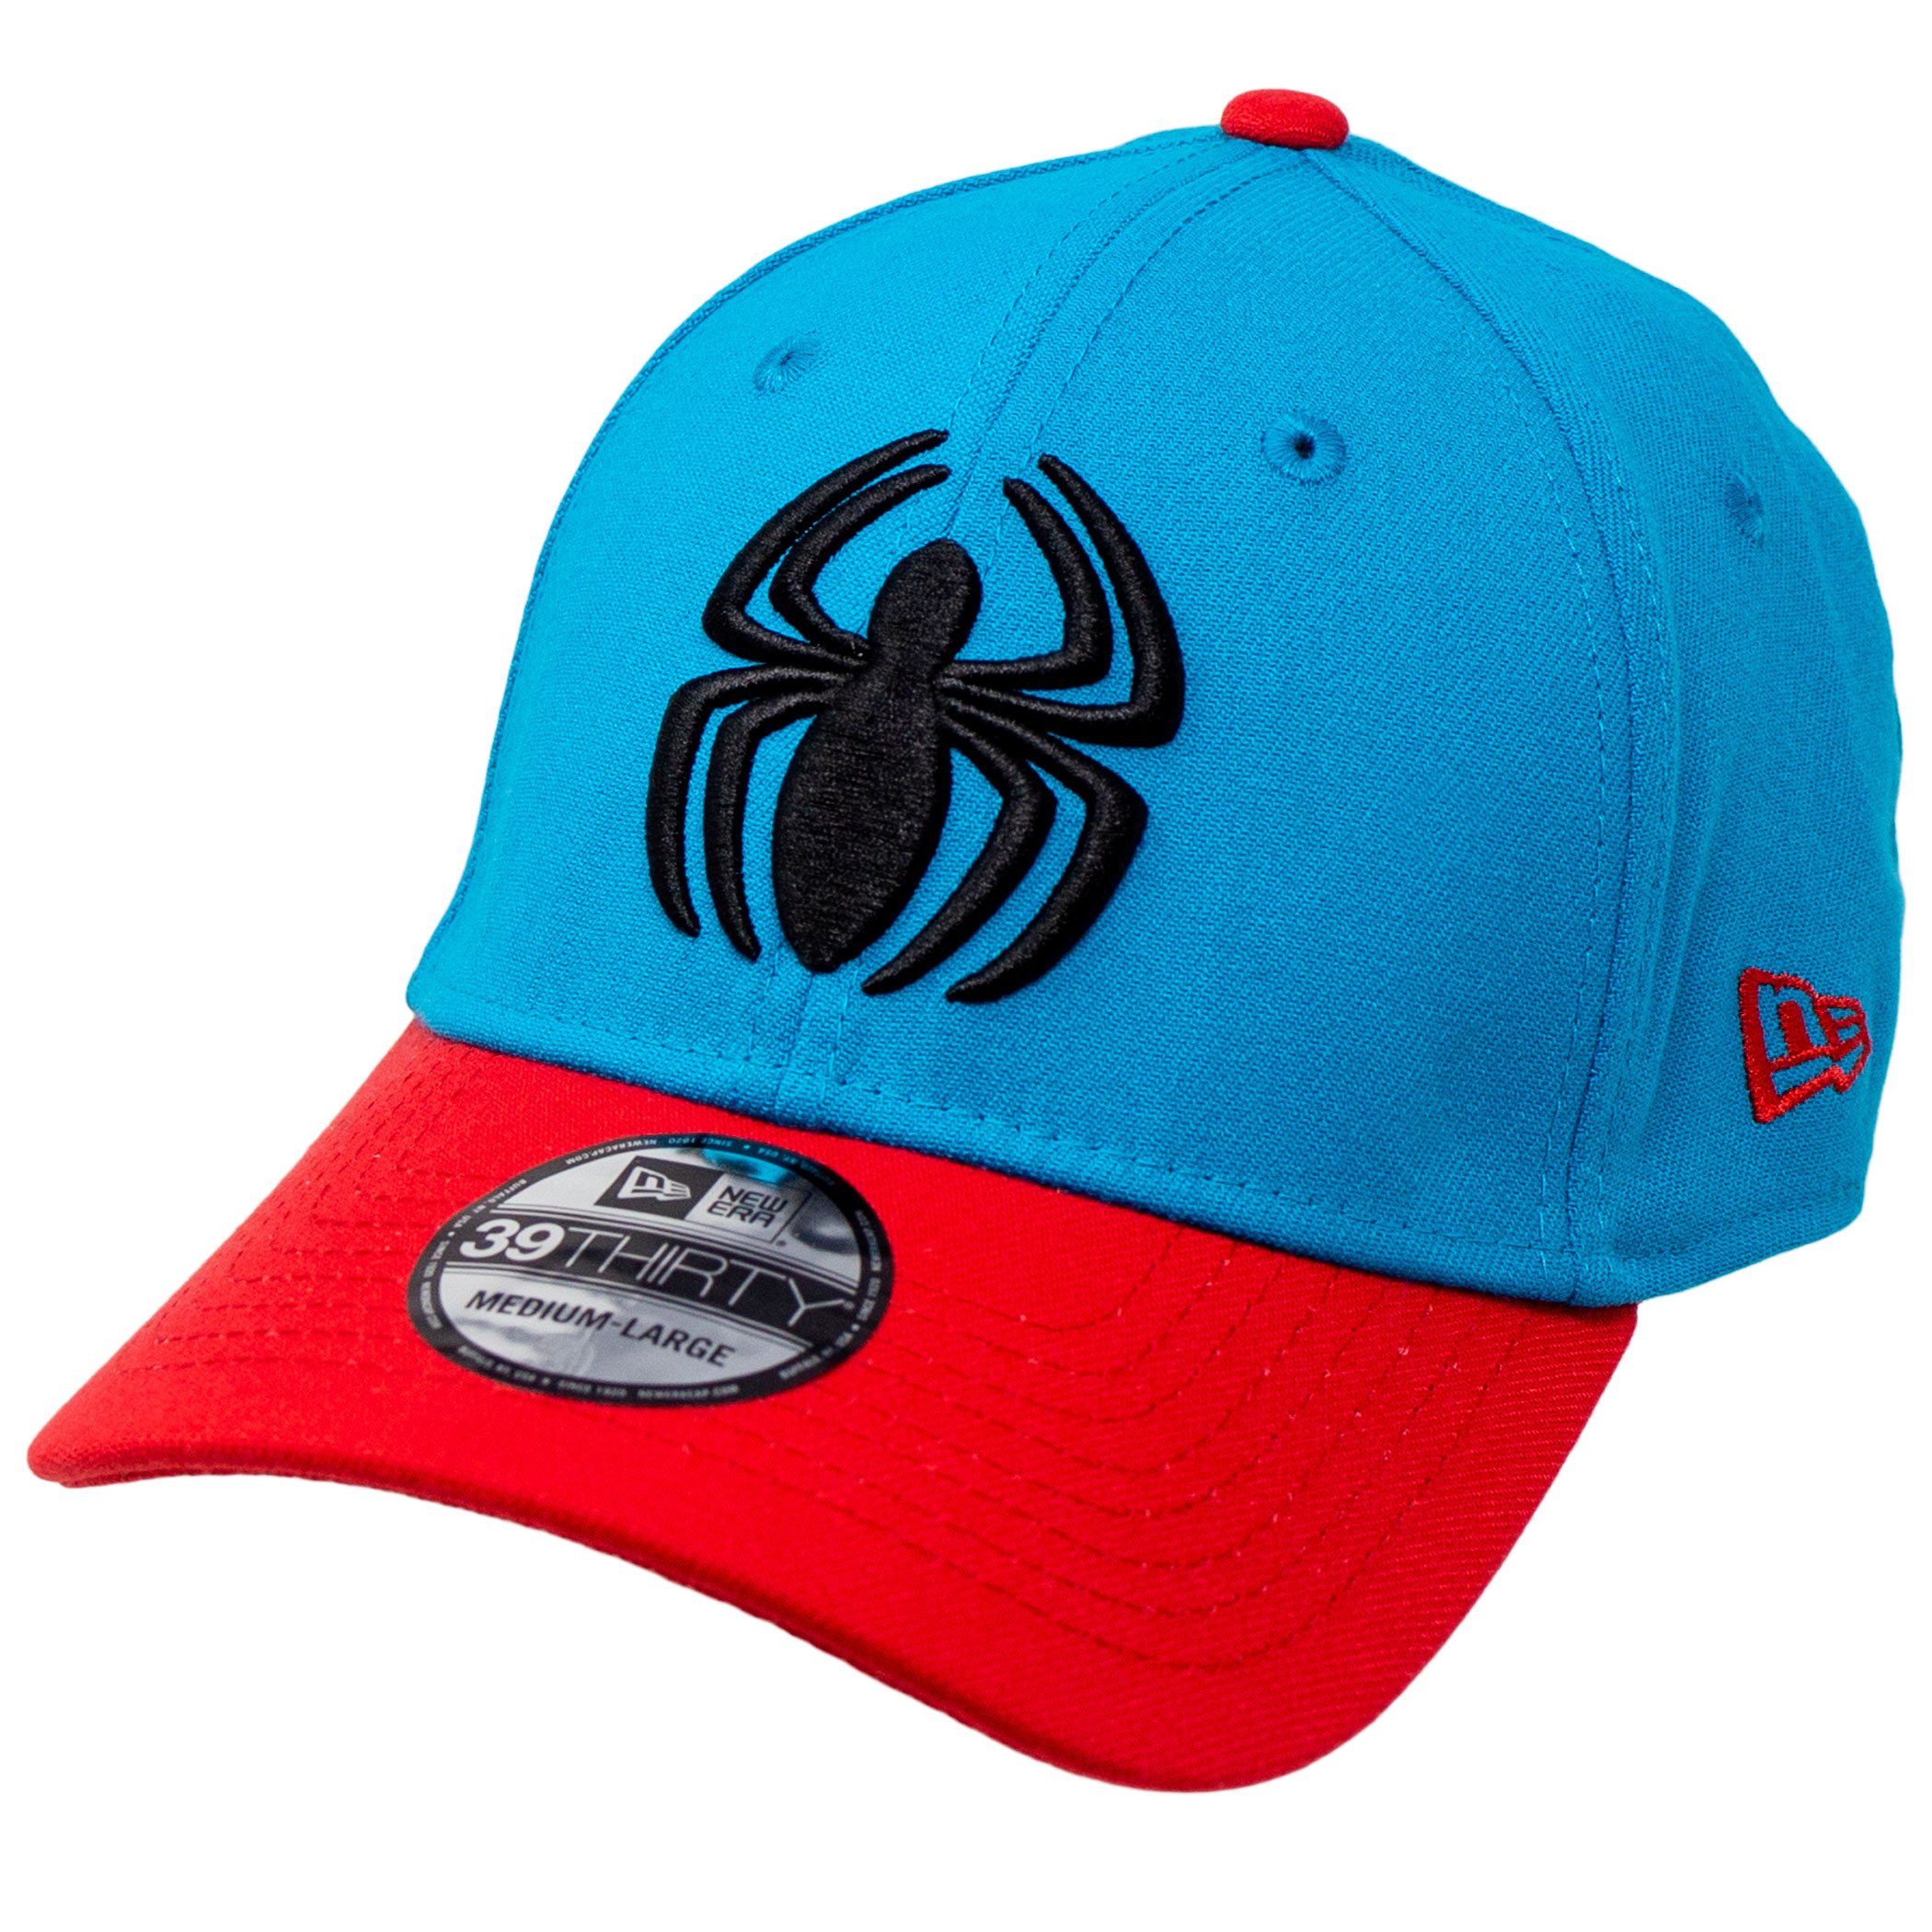 Scarlet Spider Spider-Man New Era 39Thirty Fitted Hat